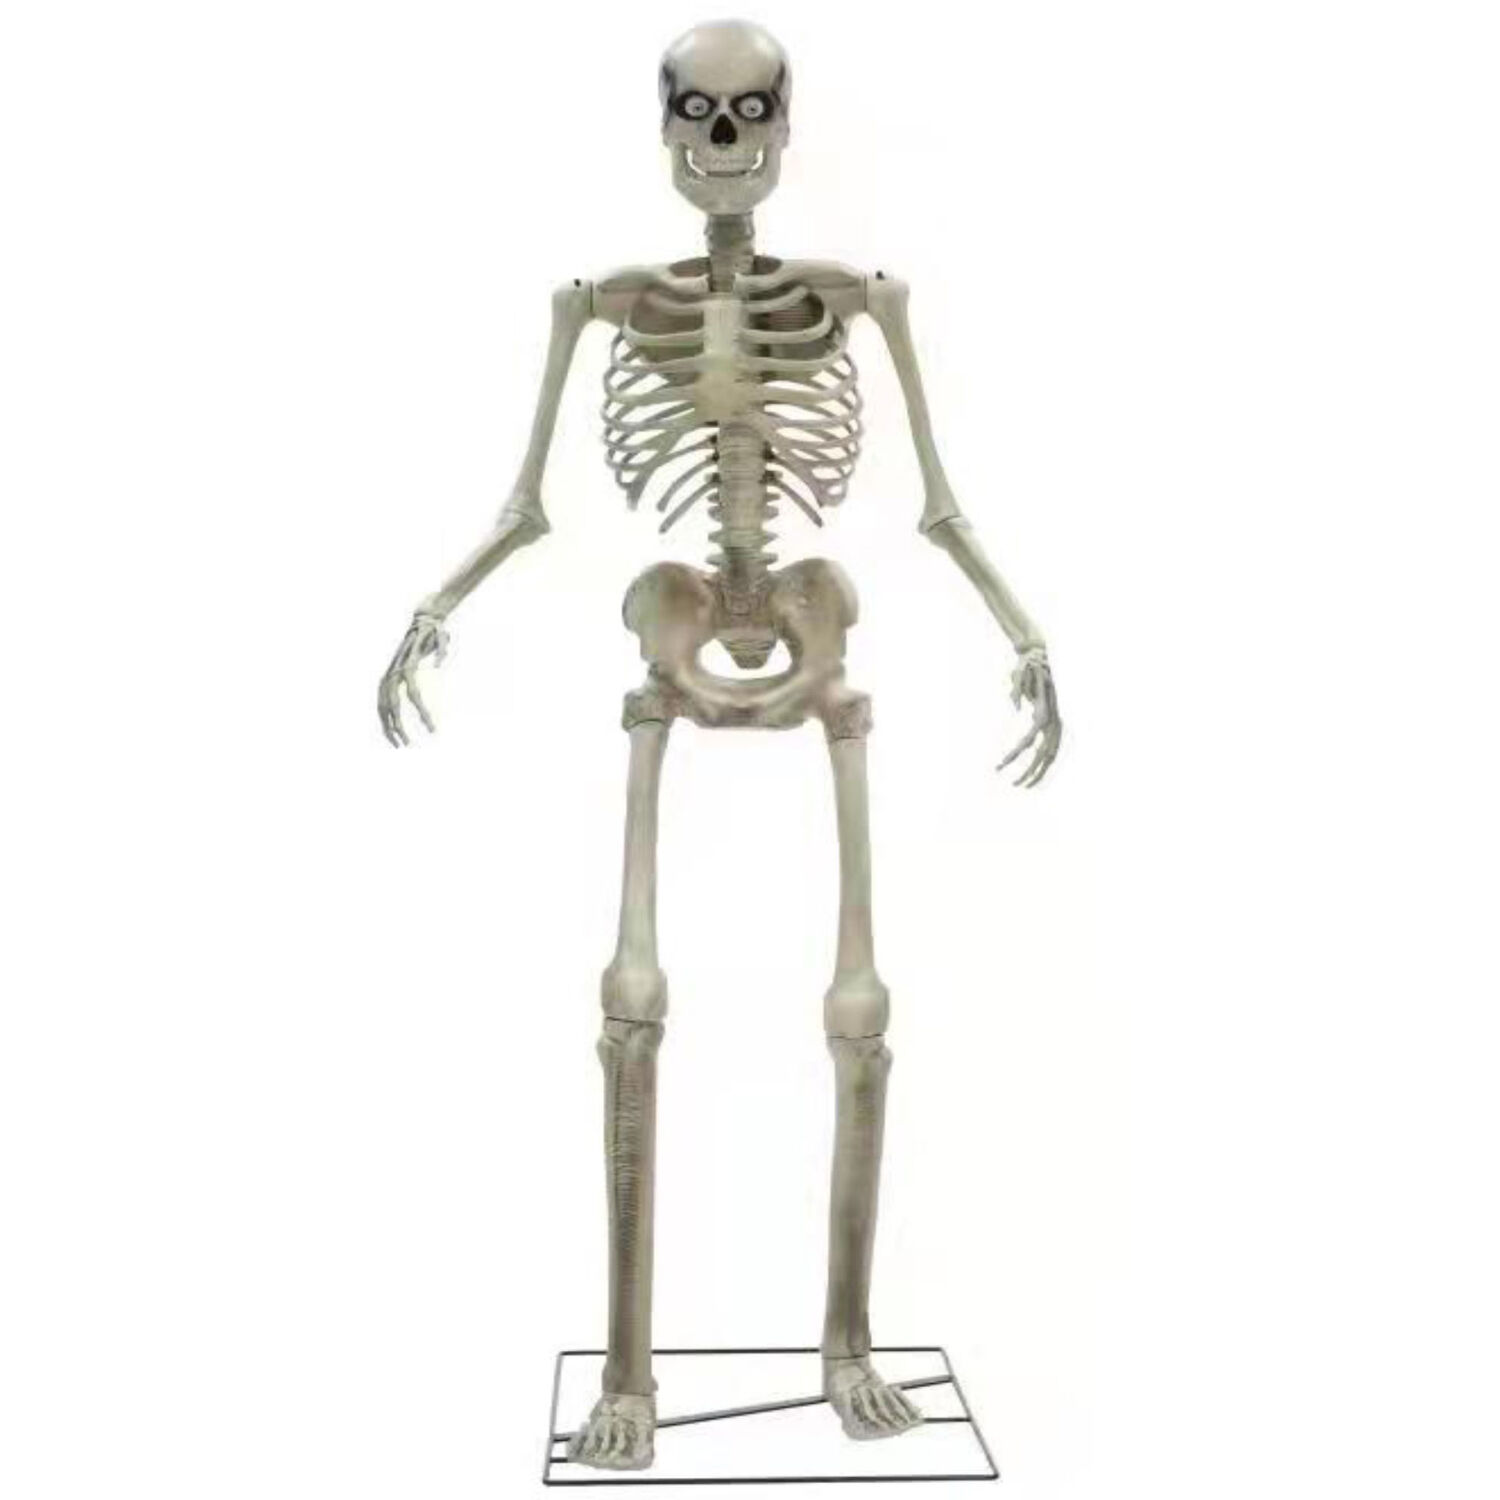 NEU Halloween-Deko-Figur Riesen-Skelett, ca. 240cm, mit Licht, Sound und Bewegung, strombetrieben